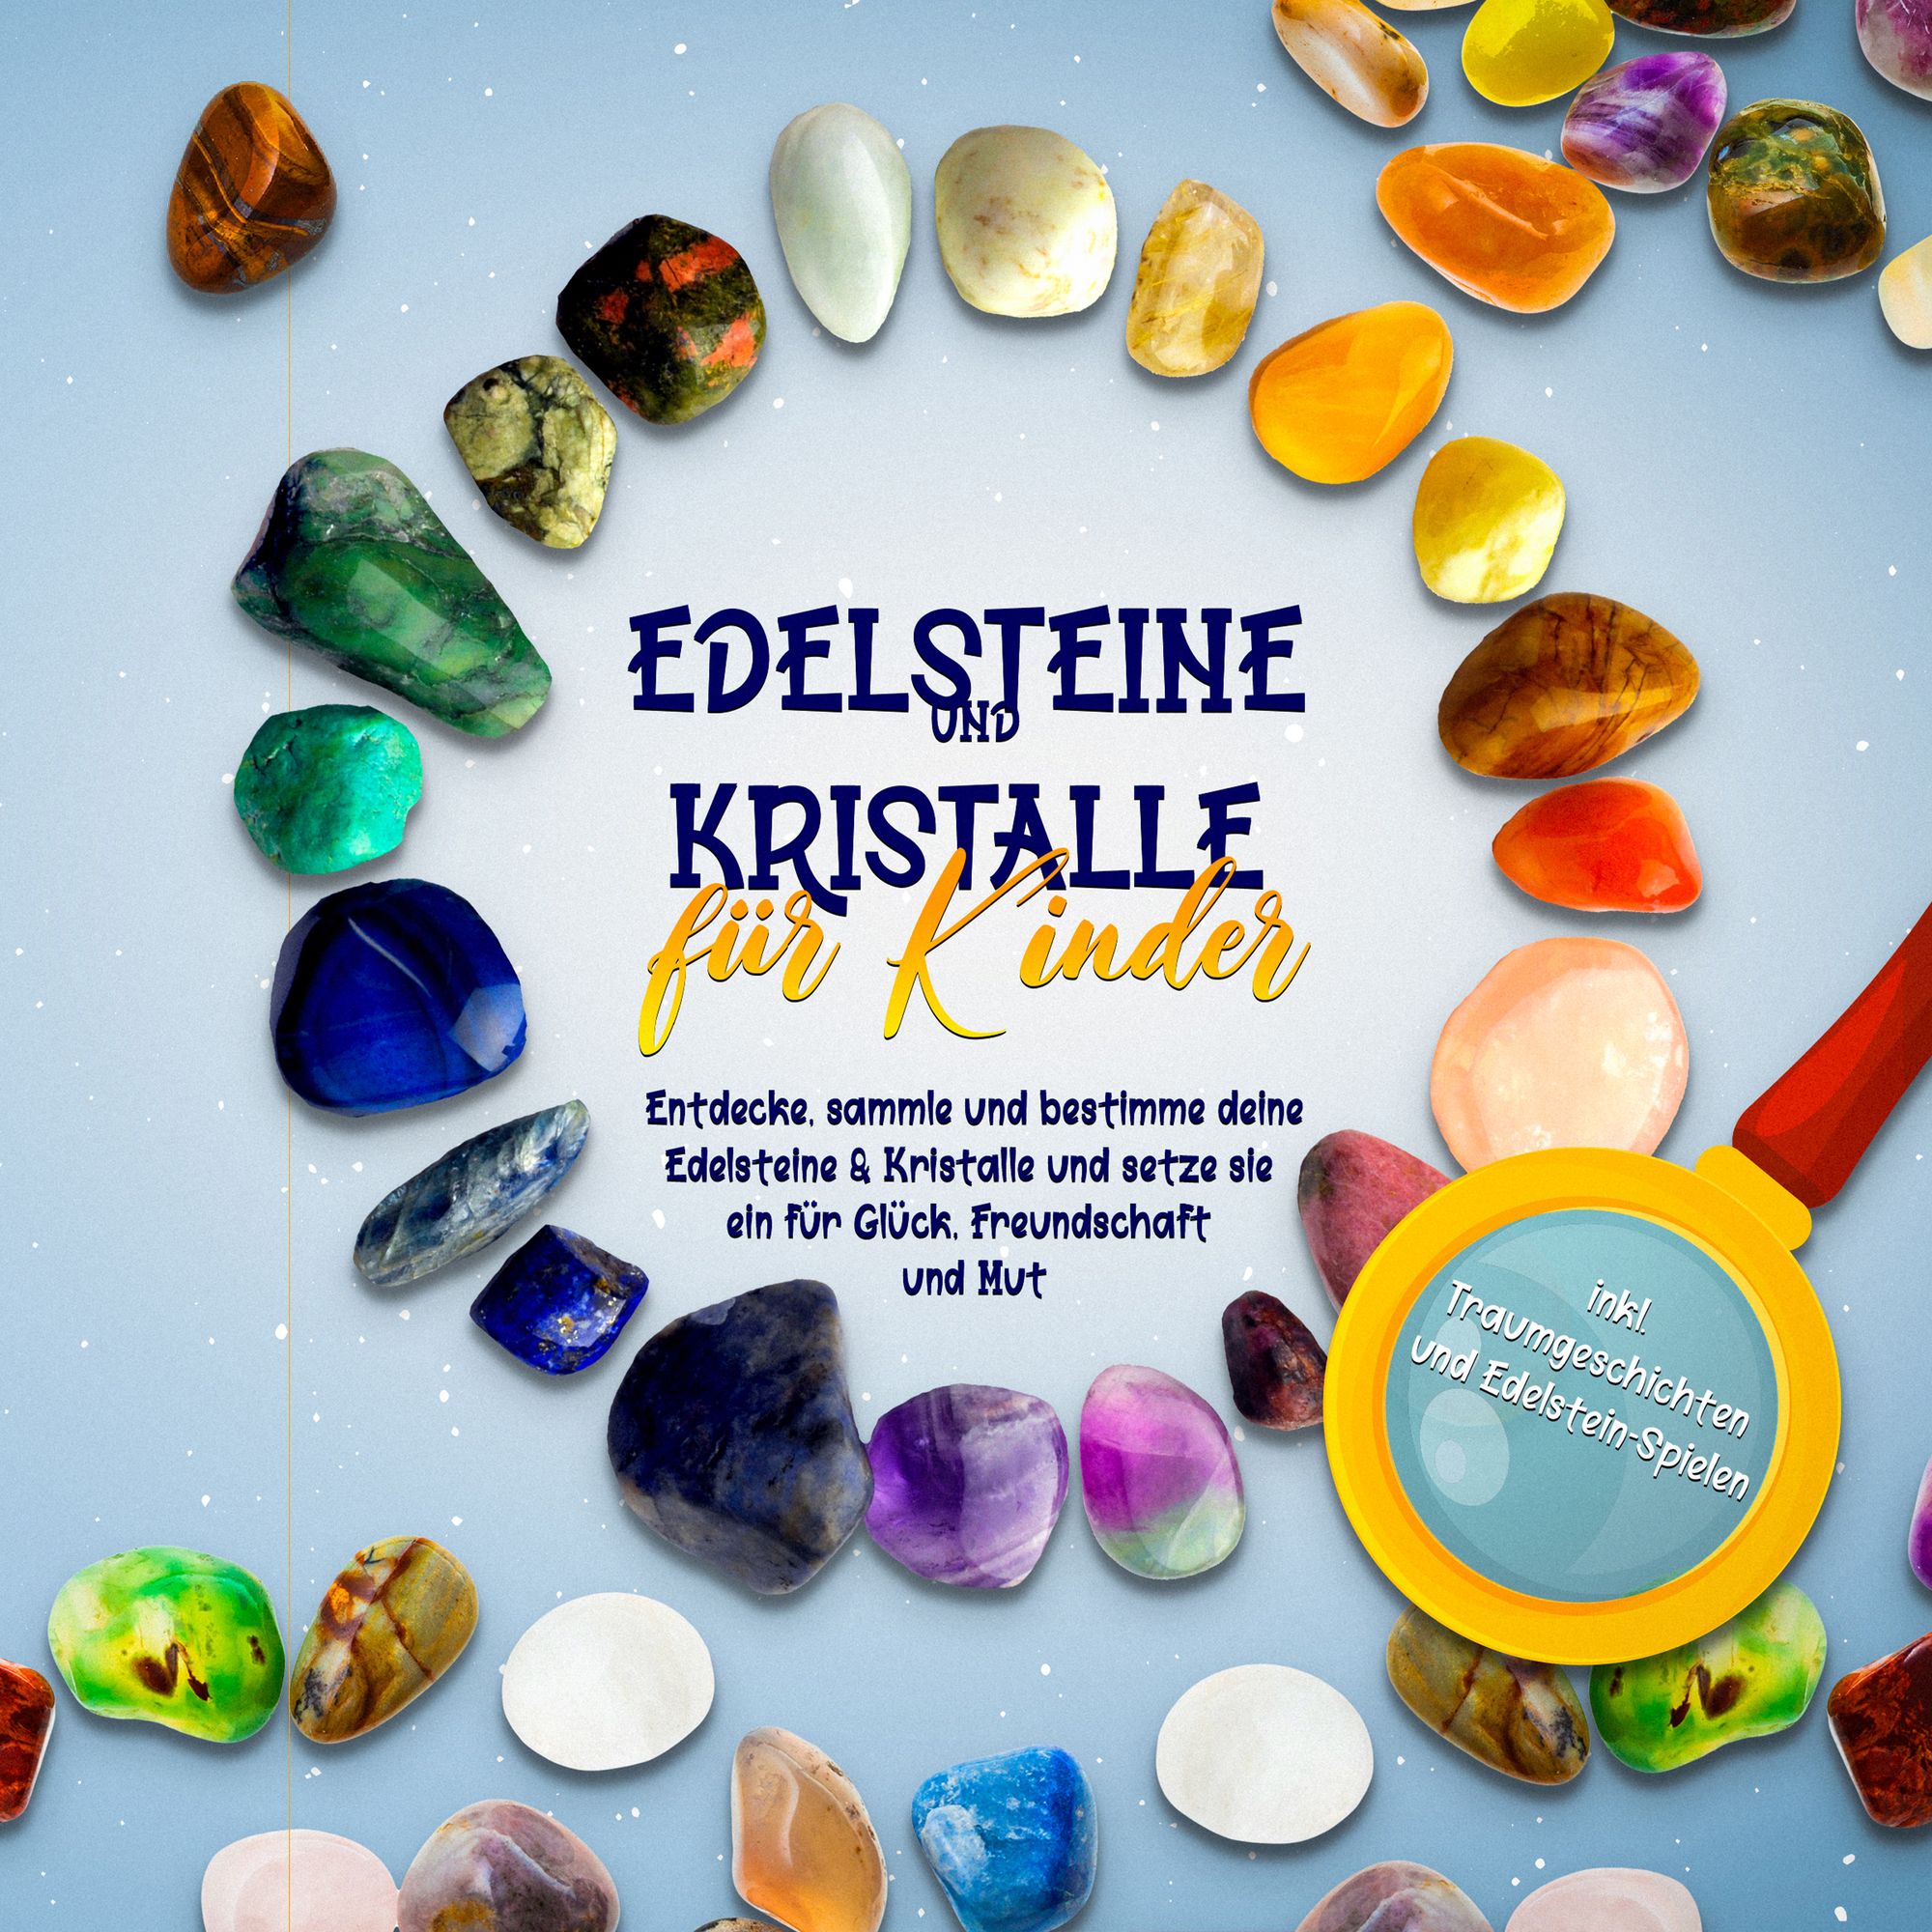 Edelsteine und Kristalle für Kinder: Entdecke, sammle und bestimme deine  Edelsteine & Kristalle und setze sie ein für Glück, Freundschaft und Mut -  in von Sebastian Robbe - Hörbuch-Download | Thalia